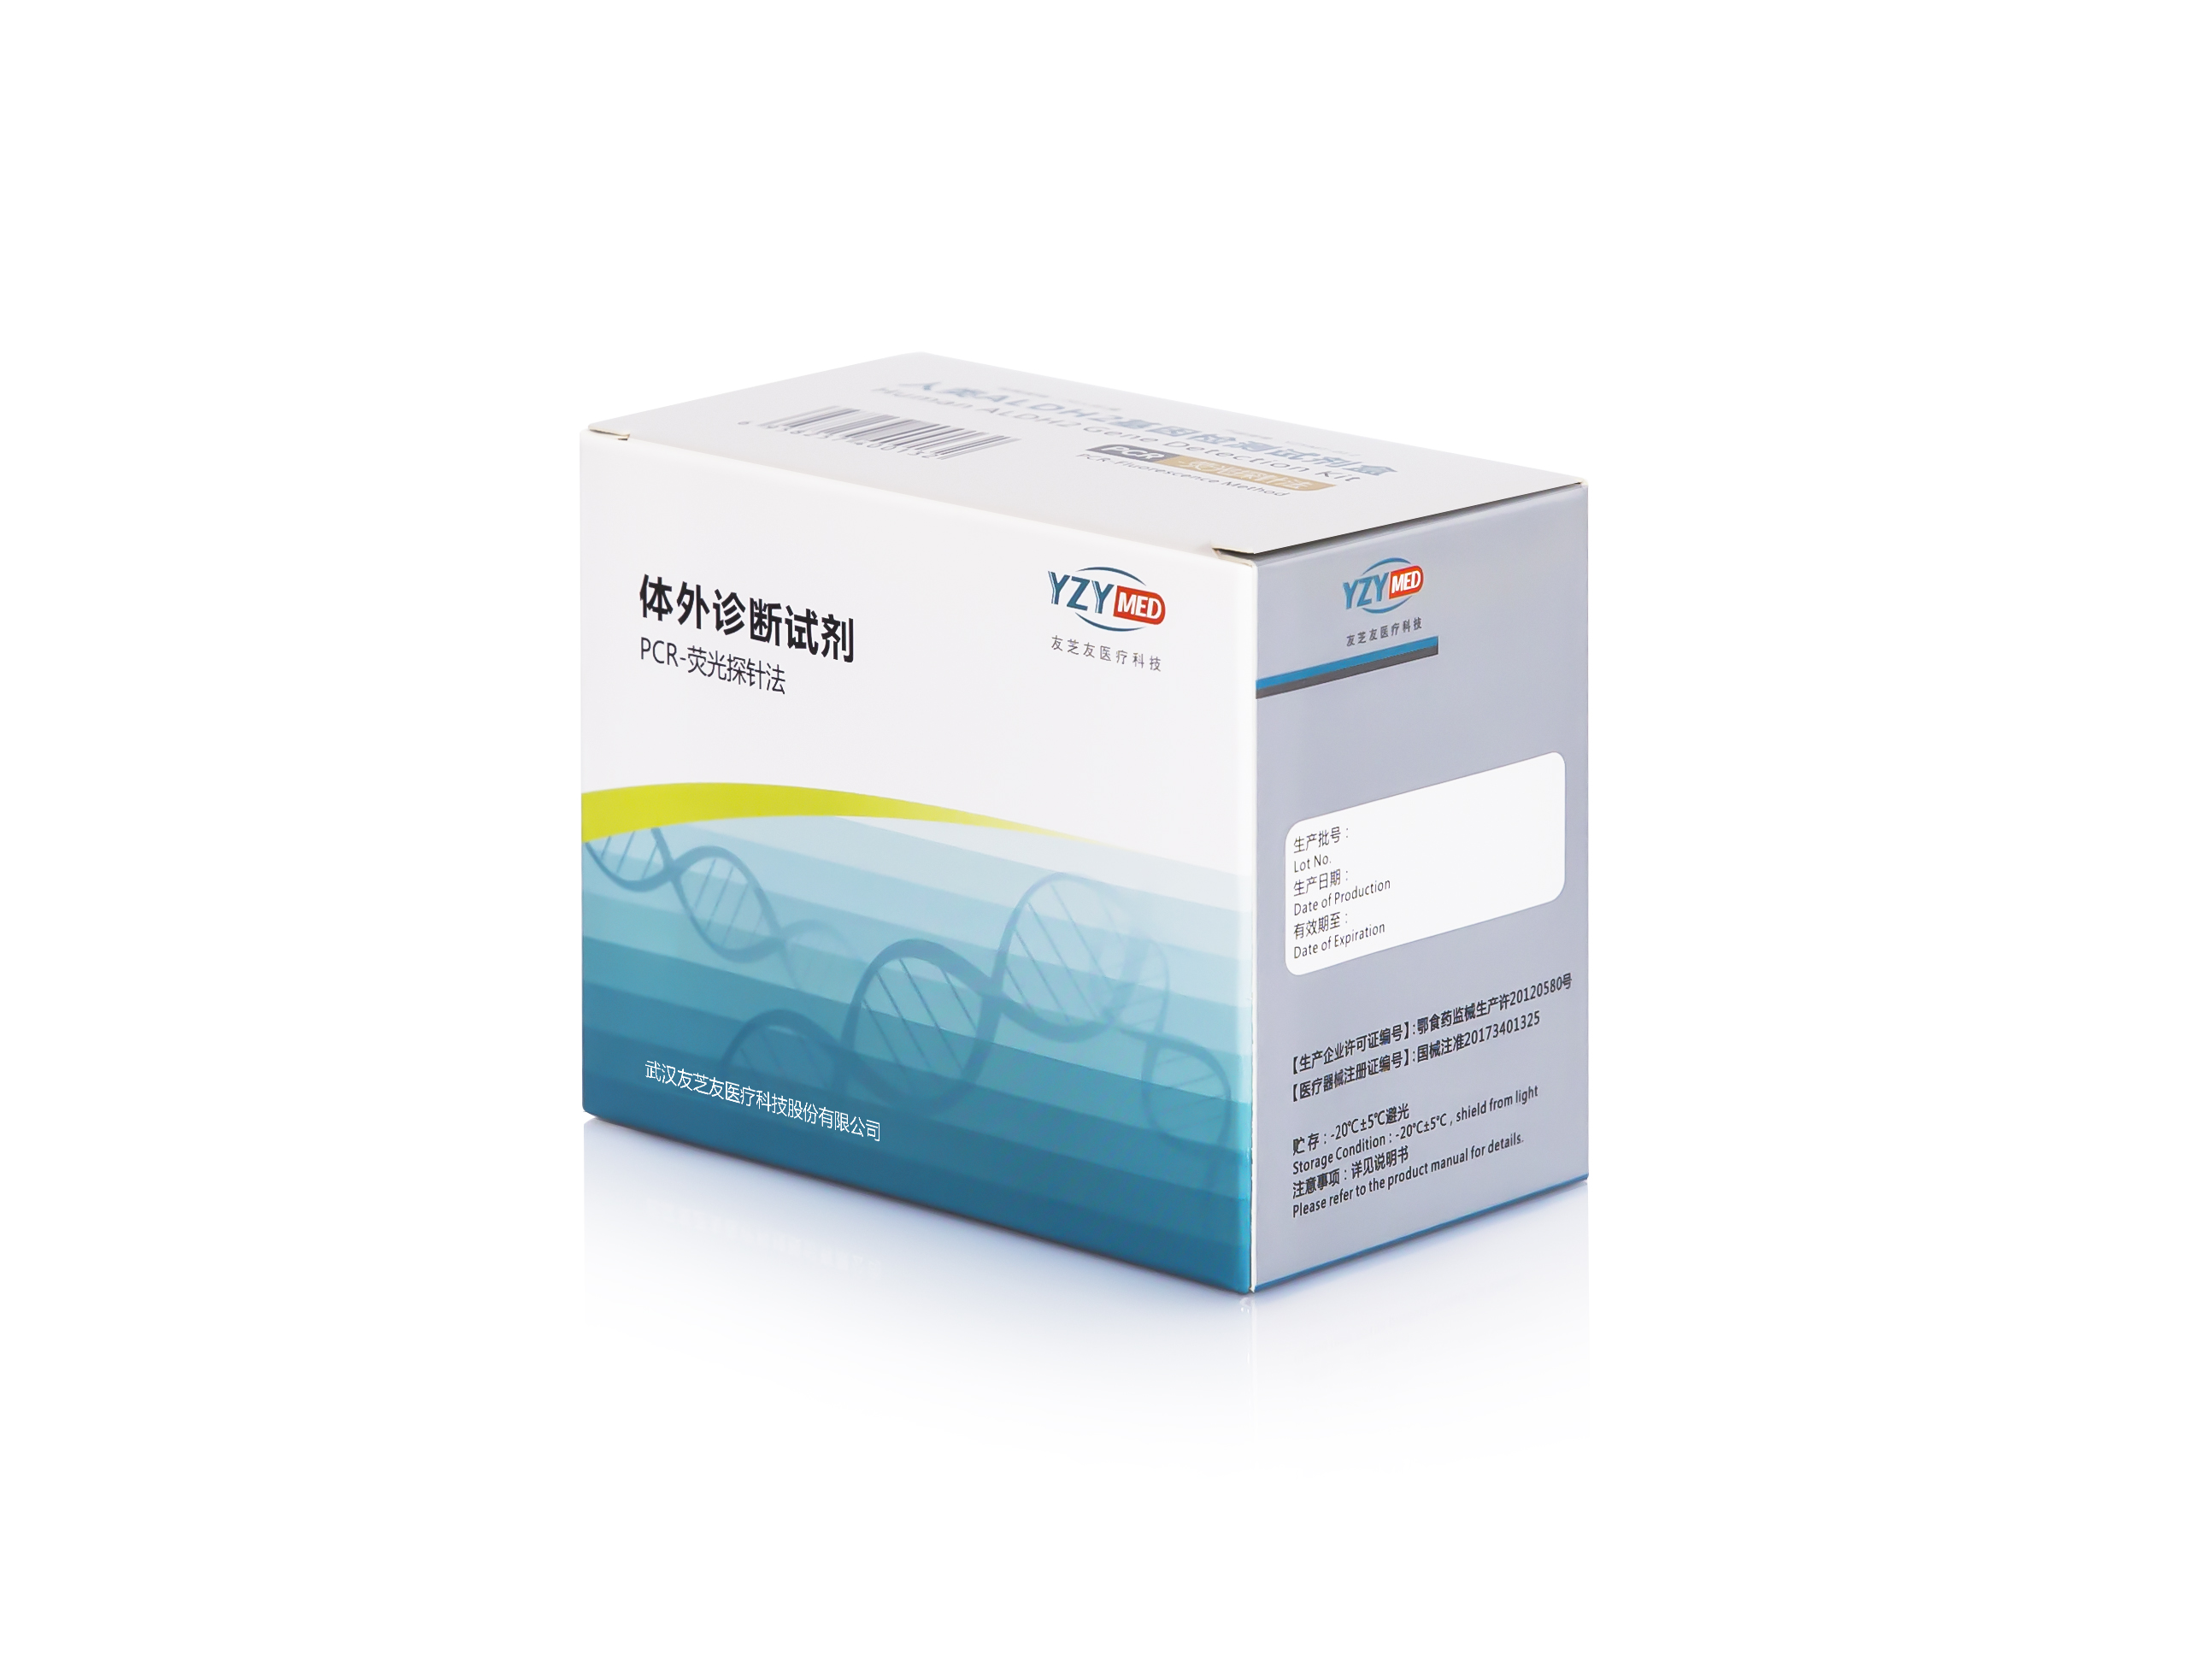 【友芝友】人类ALDH2基因检测试剂盒(PCR-荧光探针法)-云医购